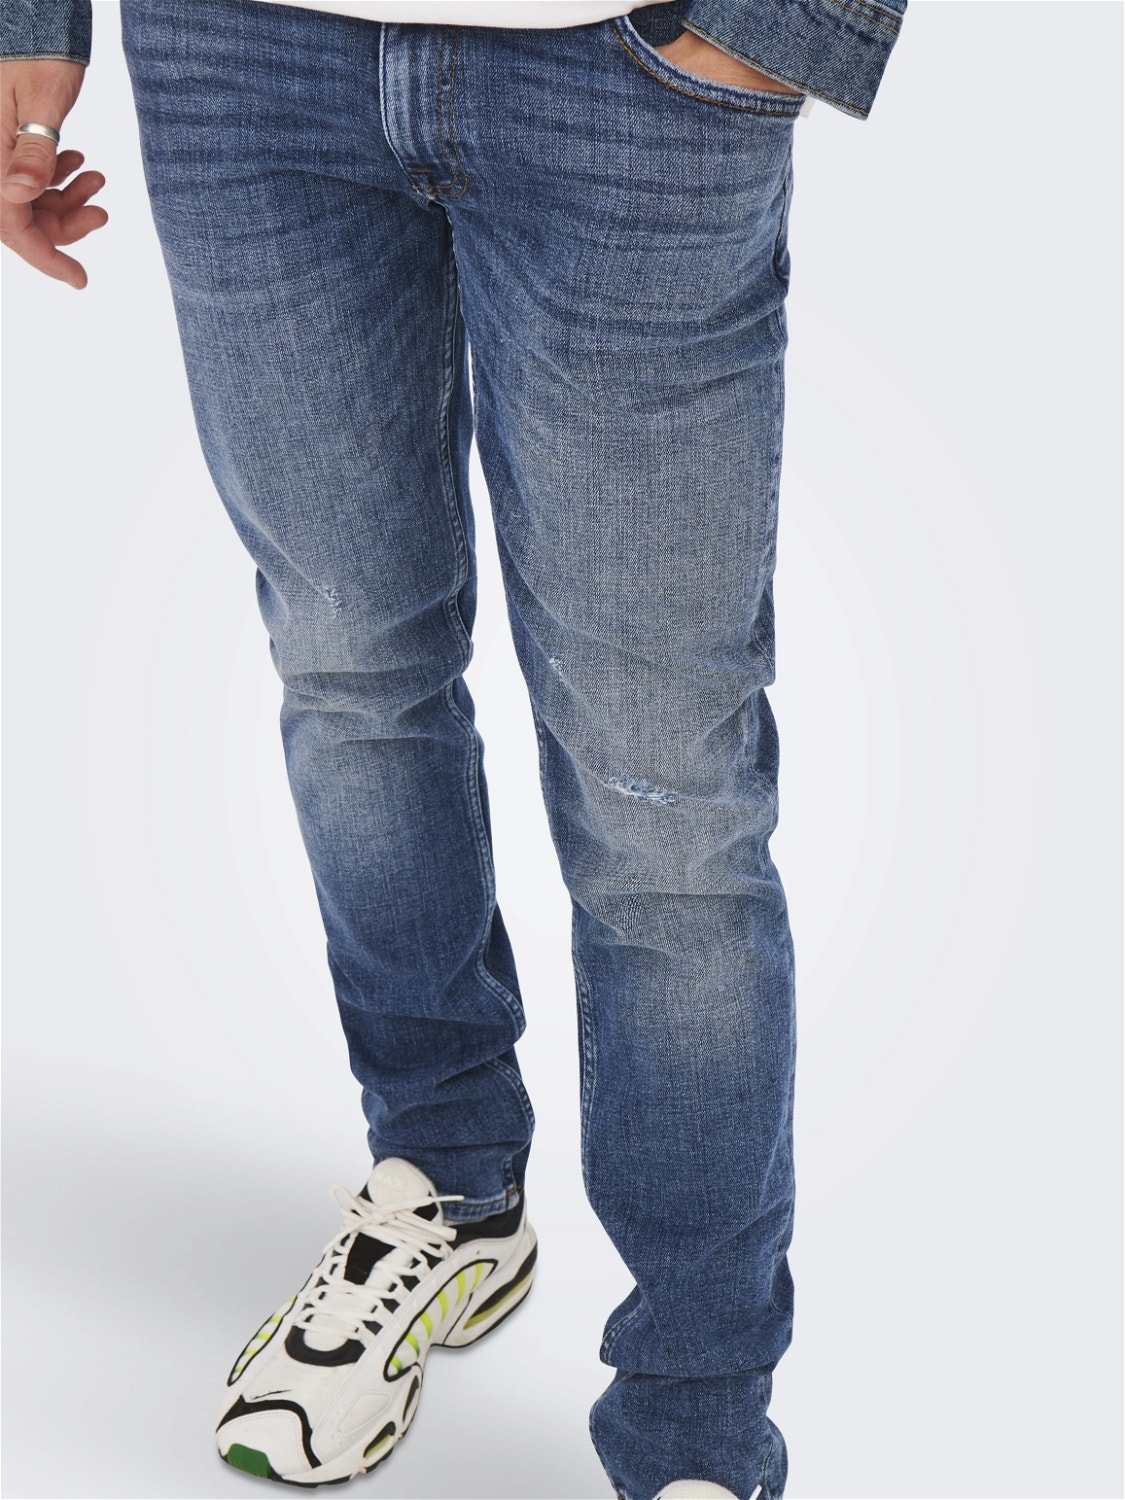 511 Mid Blue Denim Jeans For Men Skinny Fit